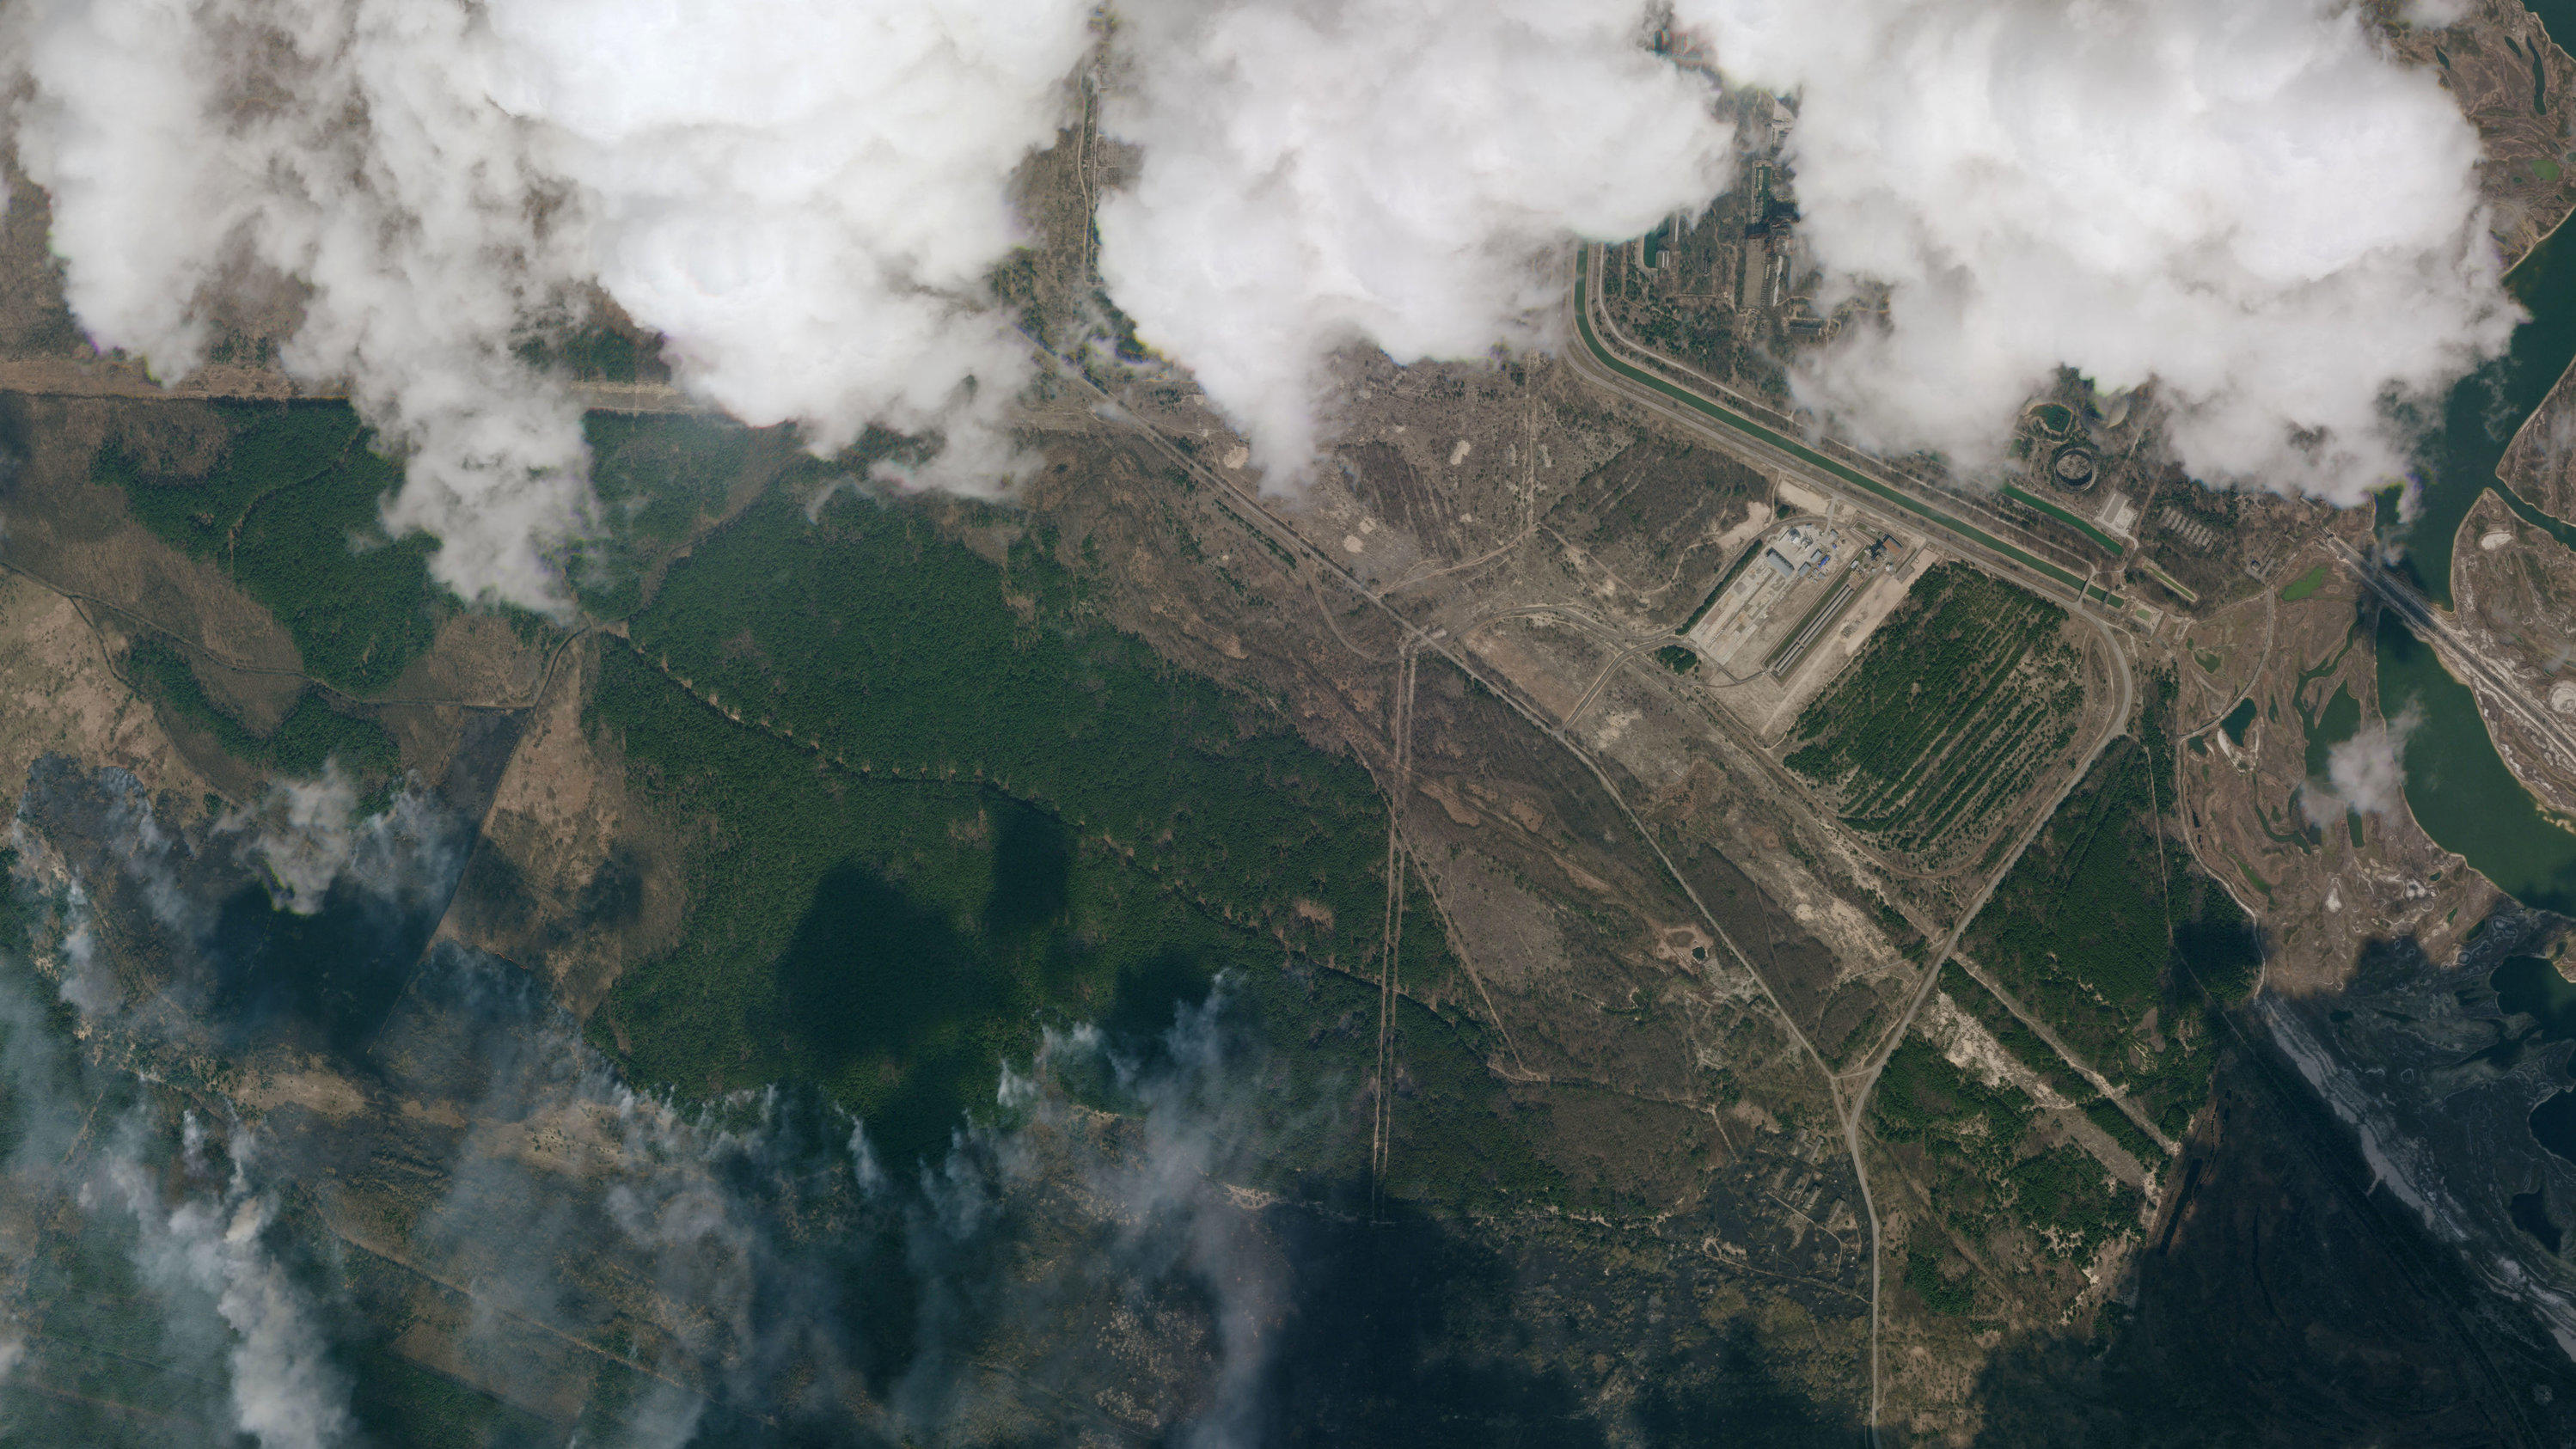 HANDOUT - 10.04.2020, Ukraine, Tschernobyl-Zone: Die Satellitenaufnahme zeigt einen Blick auf Rauchwolken eines Waldbrands in der Sperrzone um das stillgelegte Atomkraftwerk Tschernobyl am 10.04.2020. In dem radioaktiv belasteten Gebiet stellen Waldb